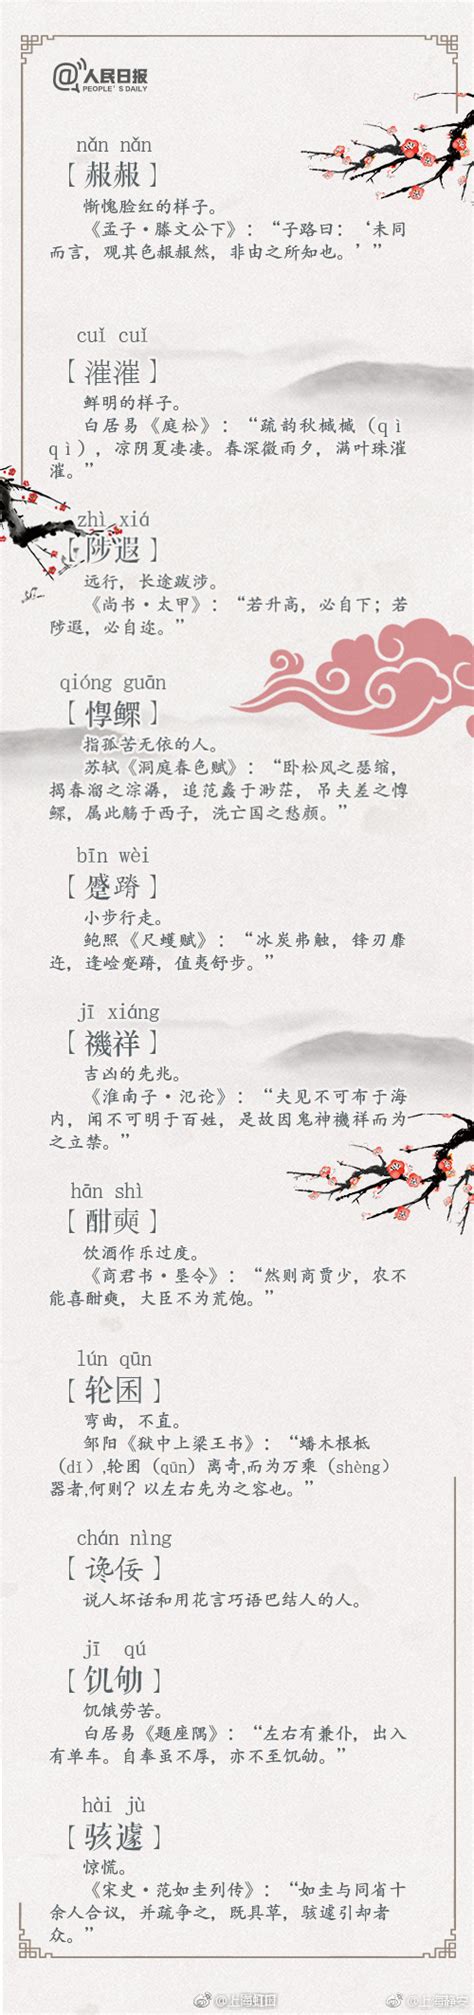 100个极富韵味的古语词汇盘点 中国唯美典雅古语词汇-闽南网